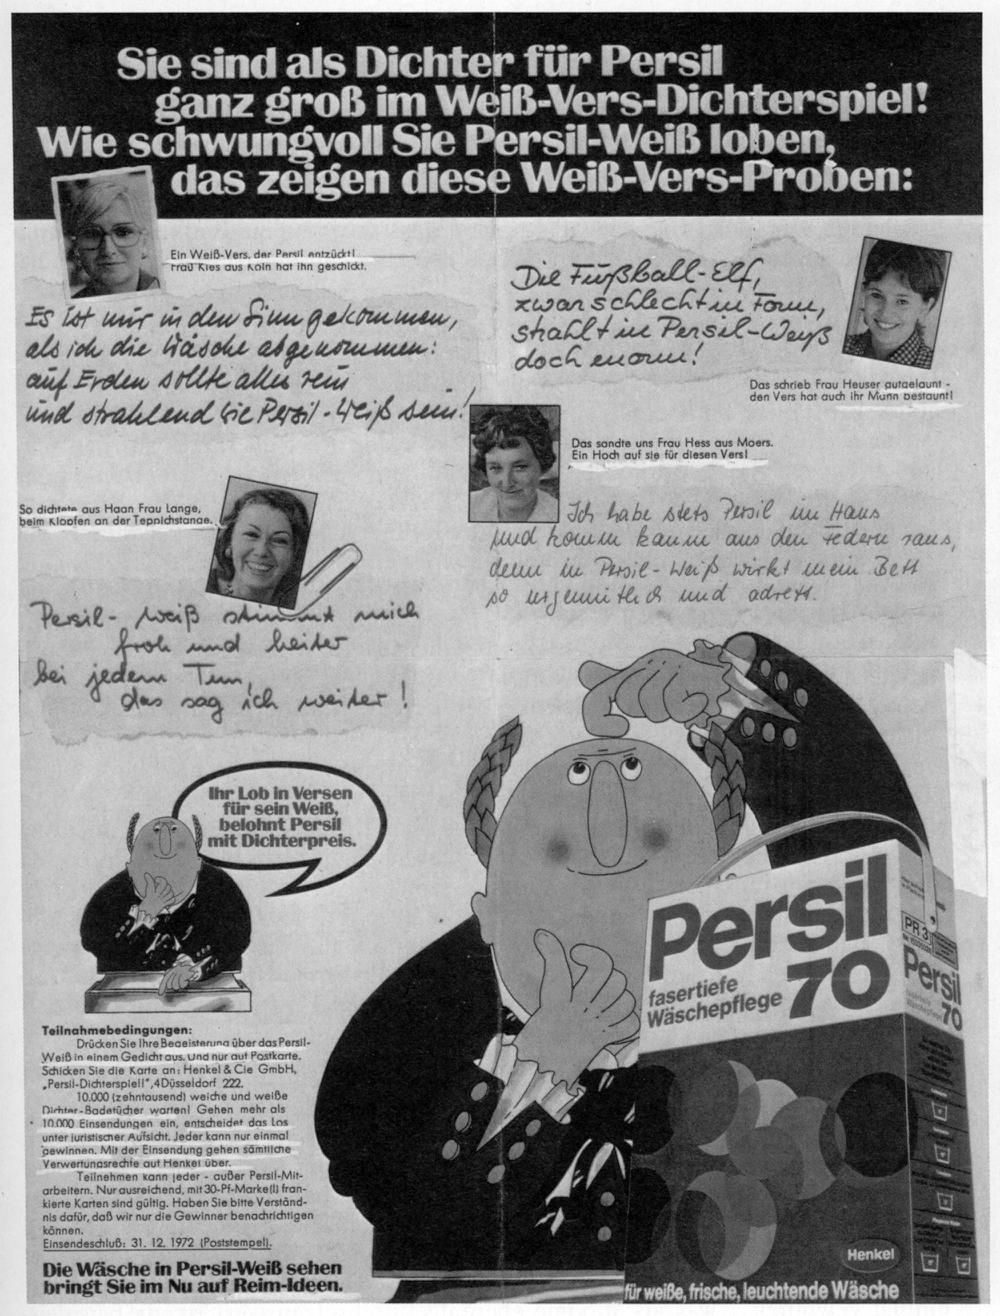 Dichterspiel von Persil, Bild: Werbeanzeige, 1972..